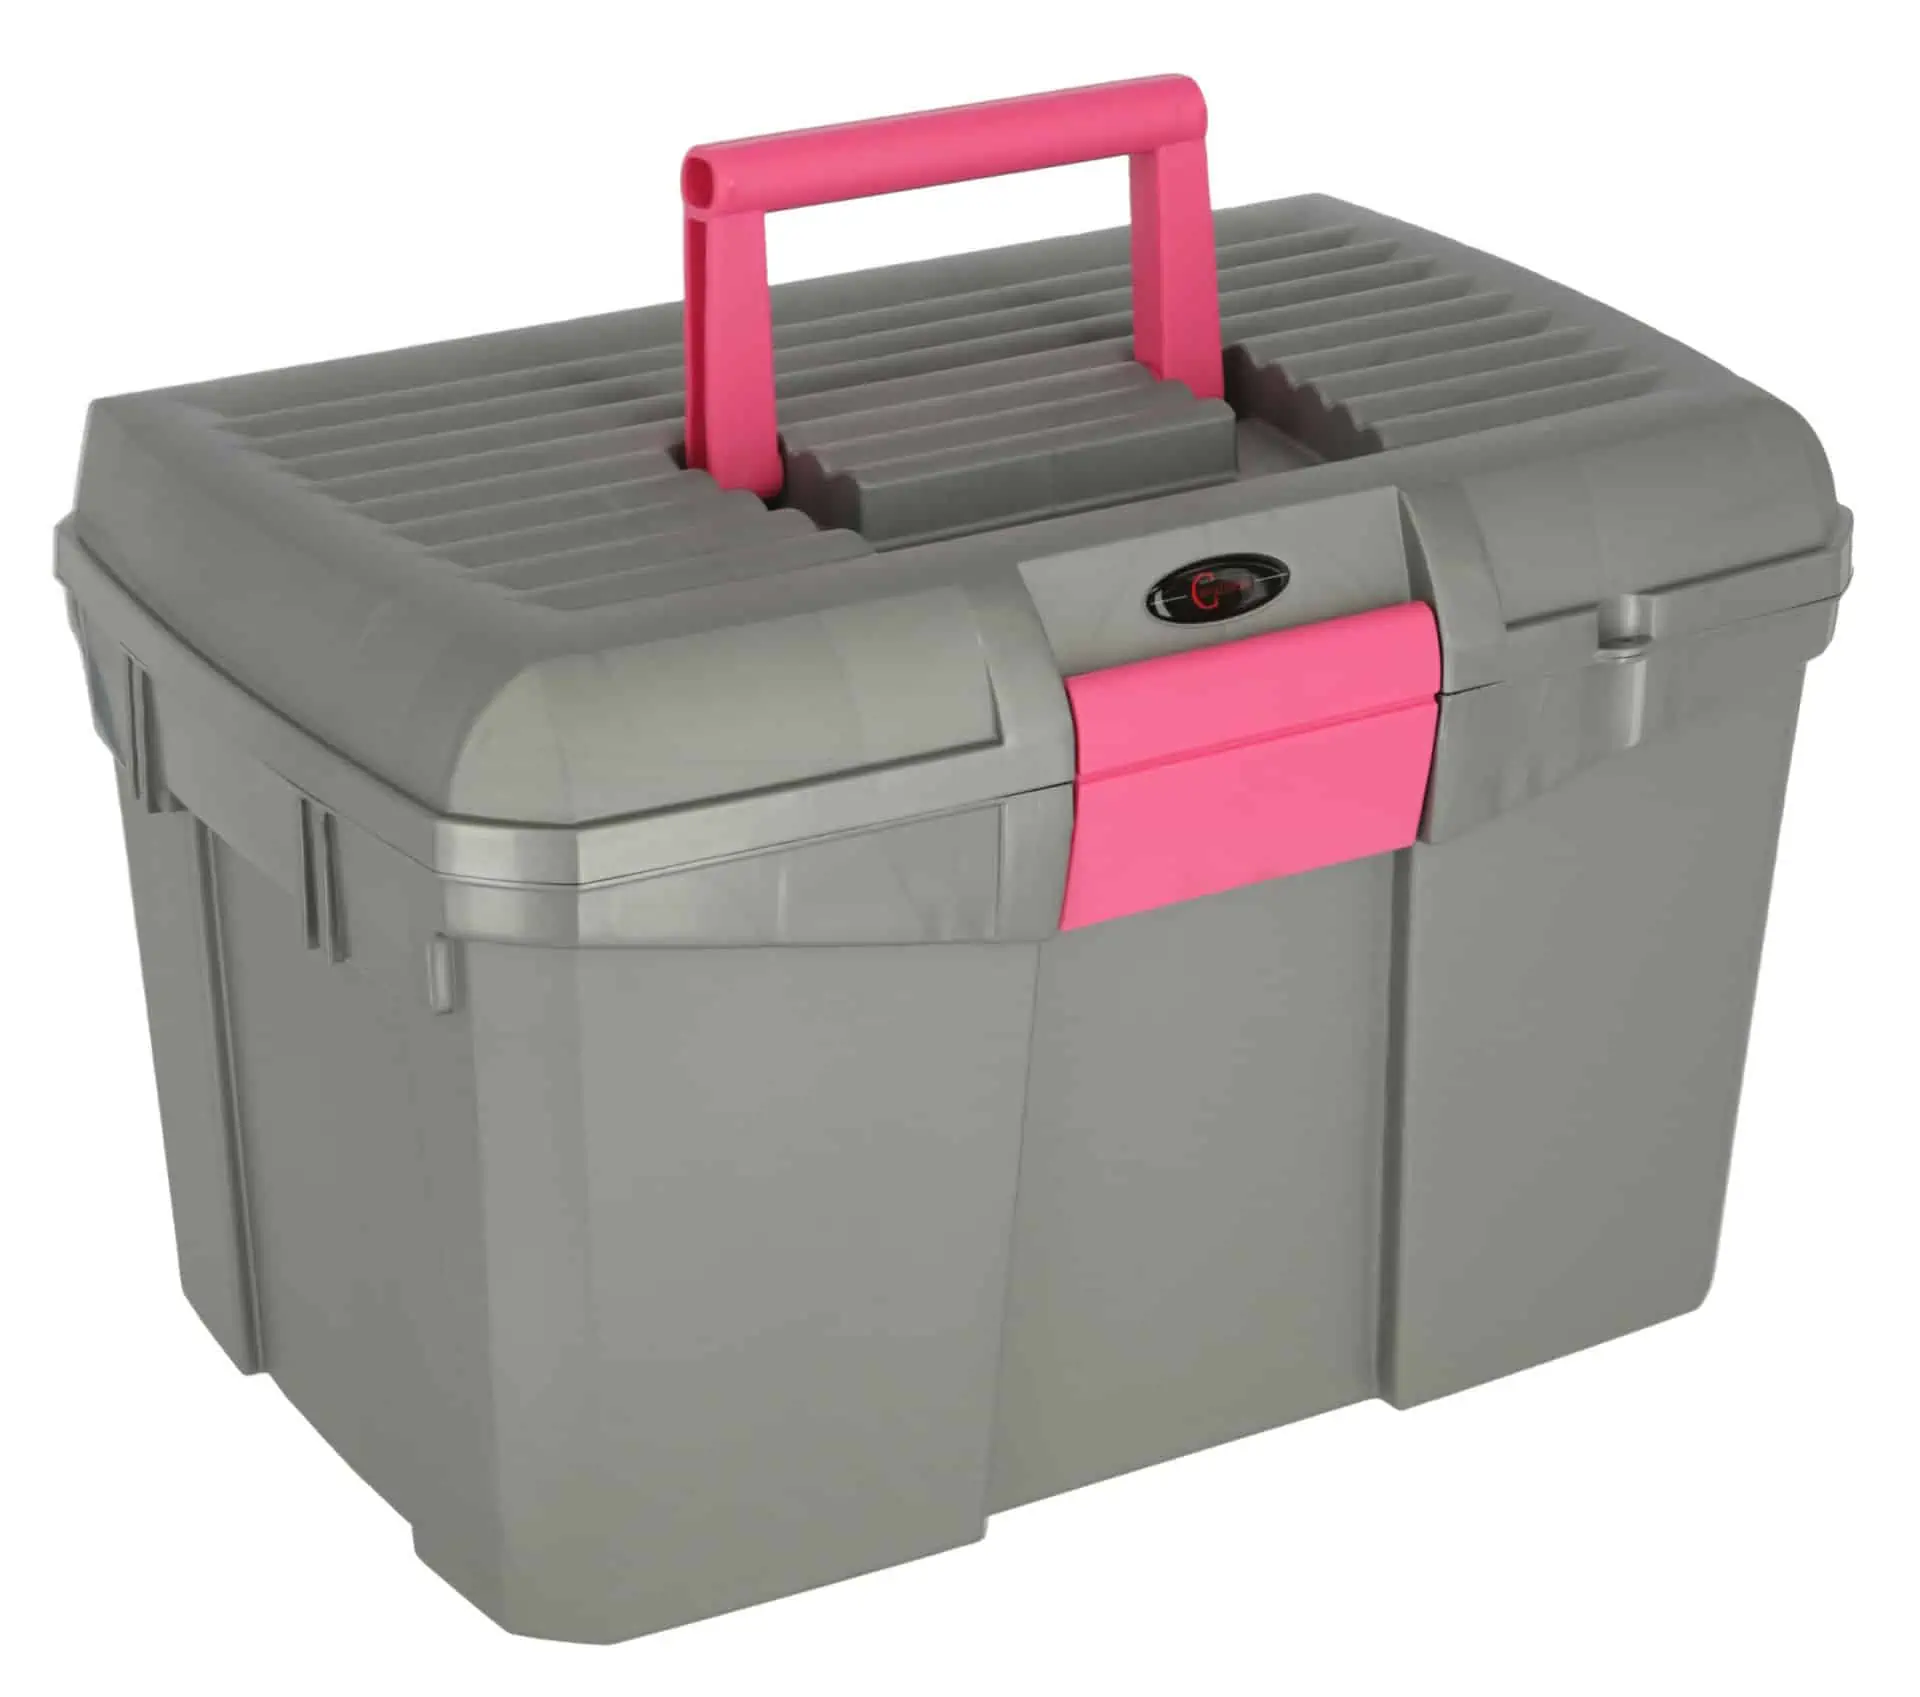 Putzbox Siena mit Einsatz grau/pink